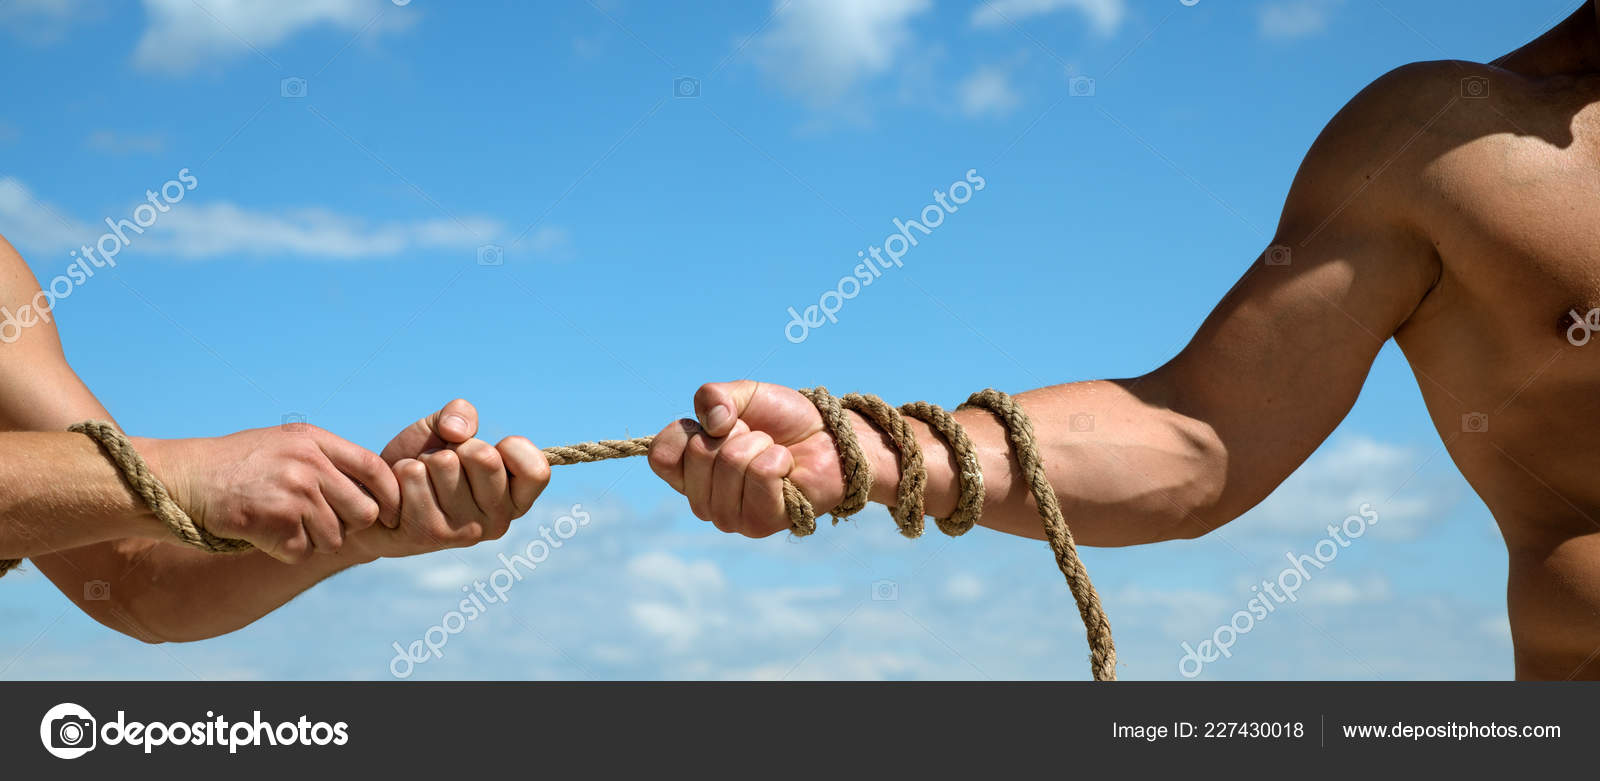 Resultado de imagem para foto de duas pessoas puxando uma corda medindo força